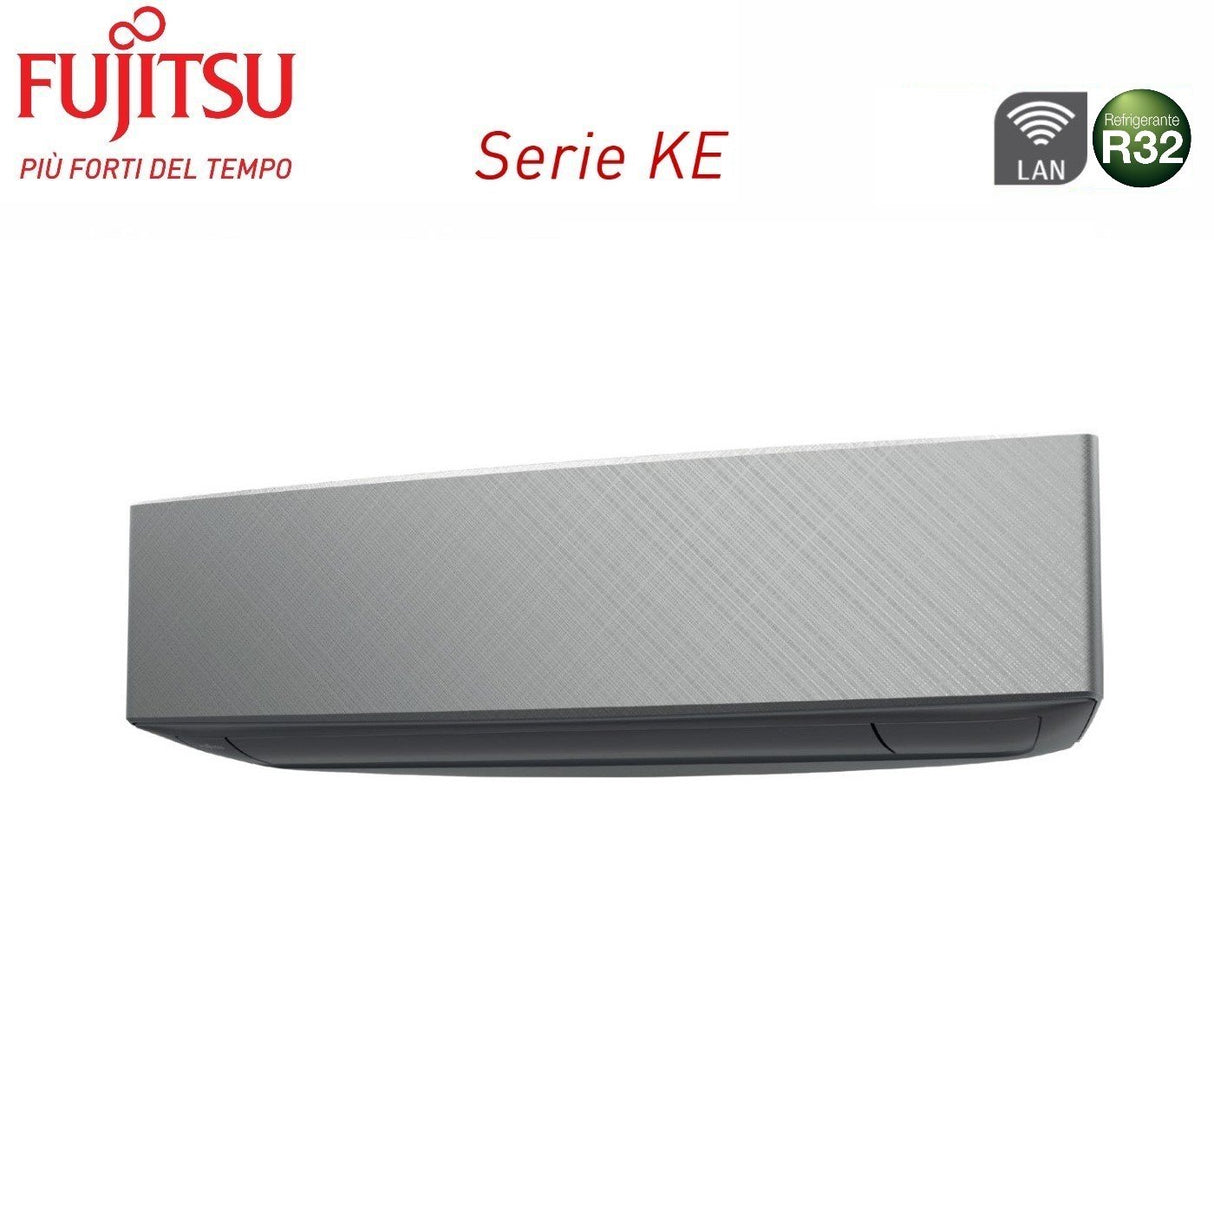 immagine-3-fujitsu-climatizzatore-condizionatore-fujitsu-trial-split-inverter-serie-ke-silver-799-con-aoyg18kbta3-r-32-wi-fi-integrato-700090009000-colore-bianco